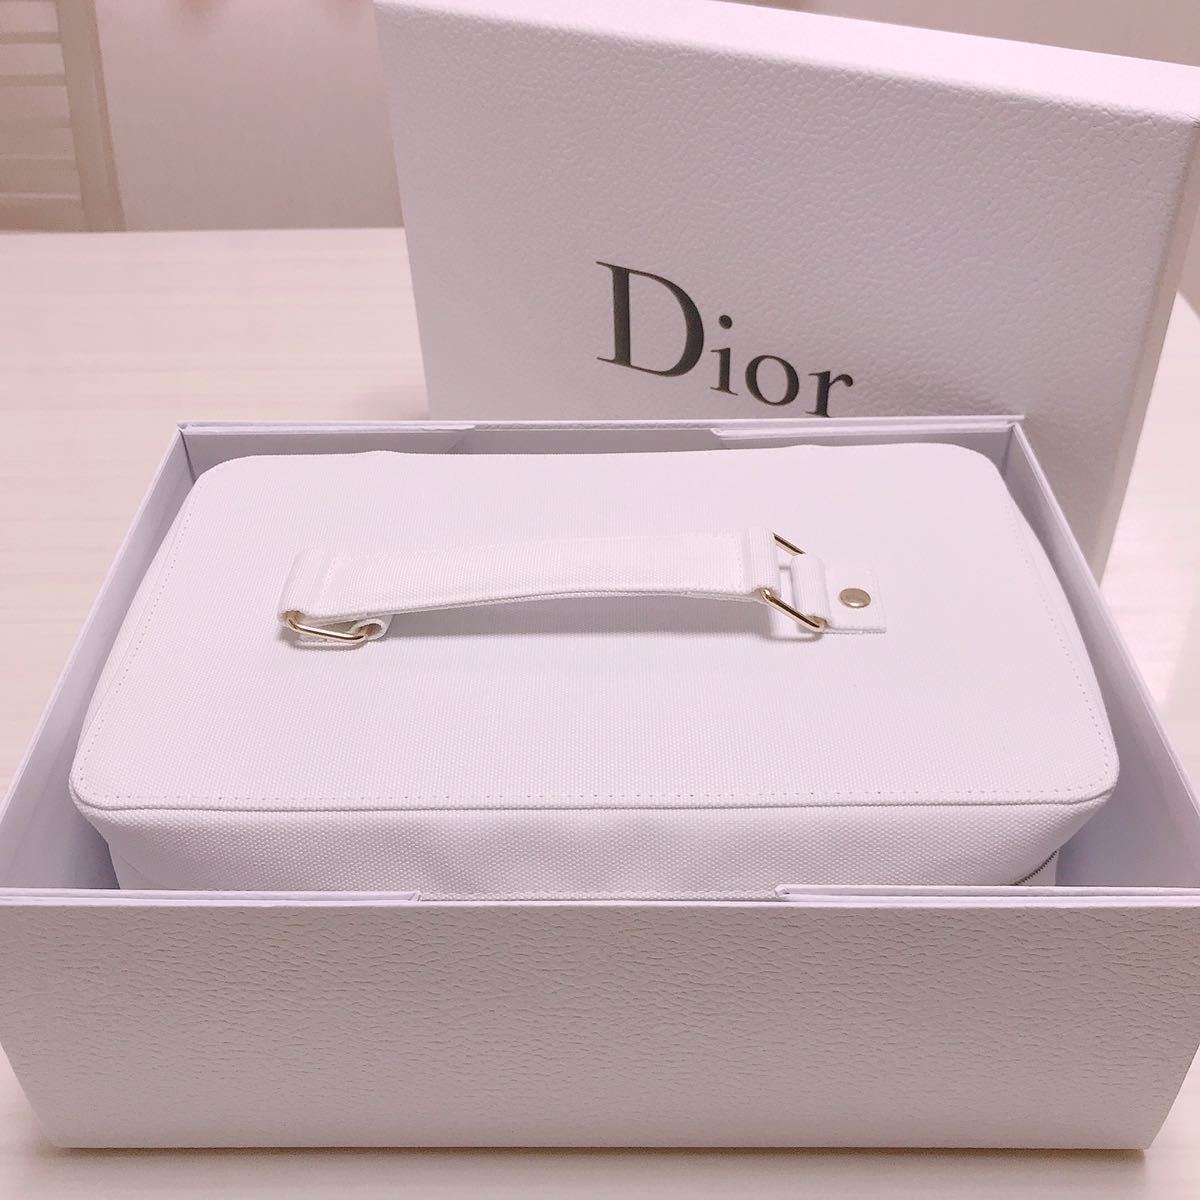 【Dior】ディオール スペシャル ノベルティ バニティ ポーチ ケース コットンケース タオル お得意様限定 非売品 レア商品